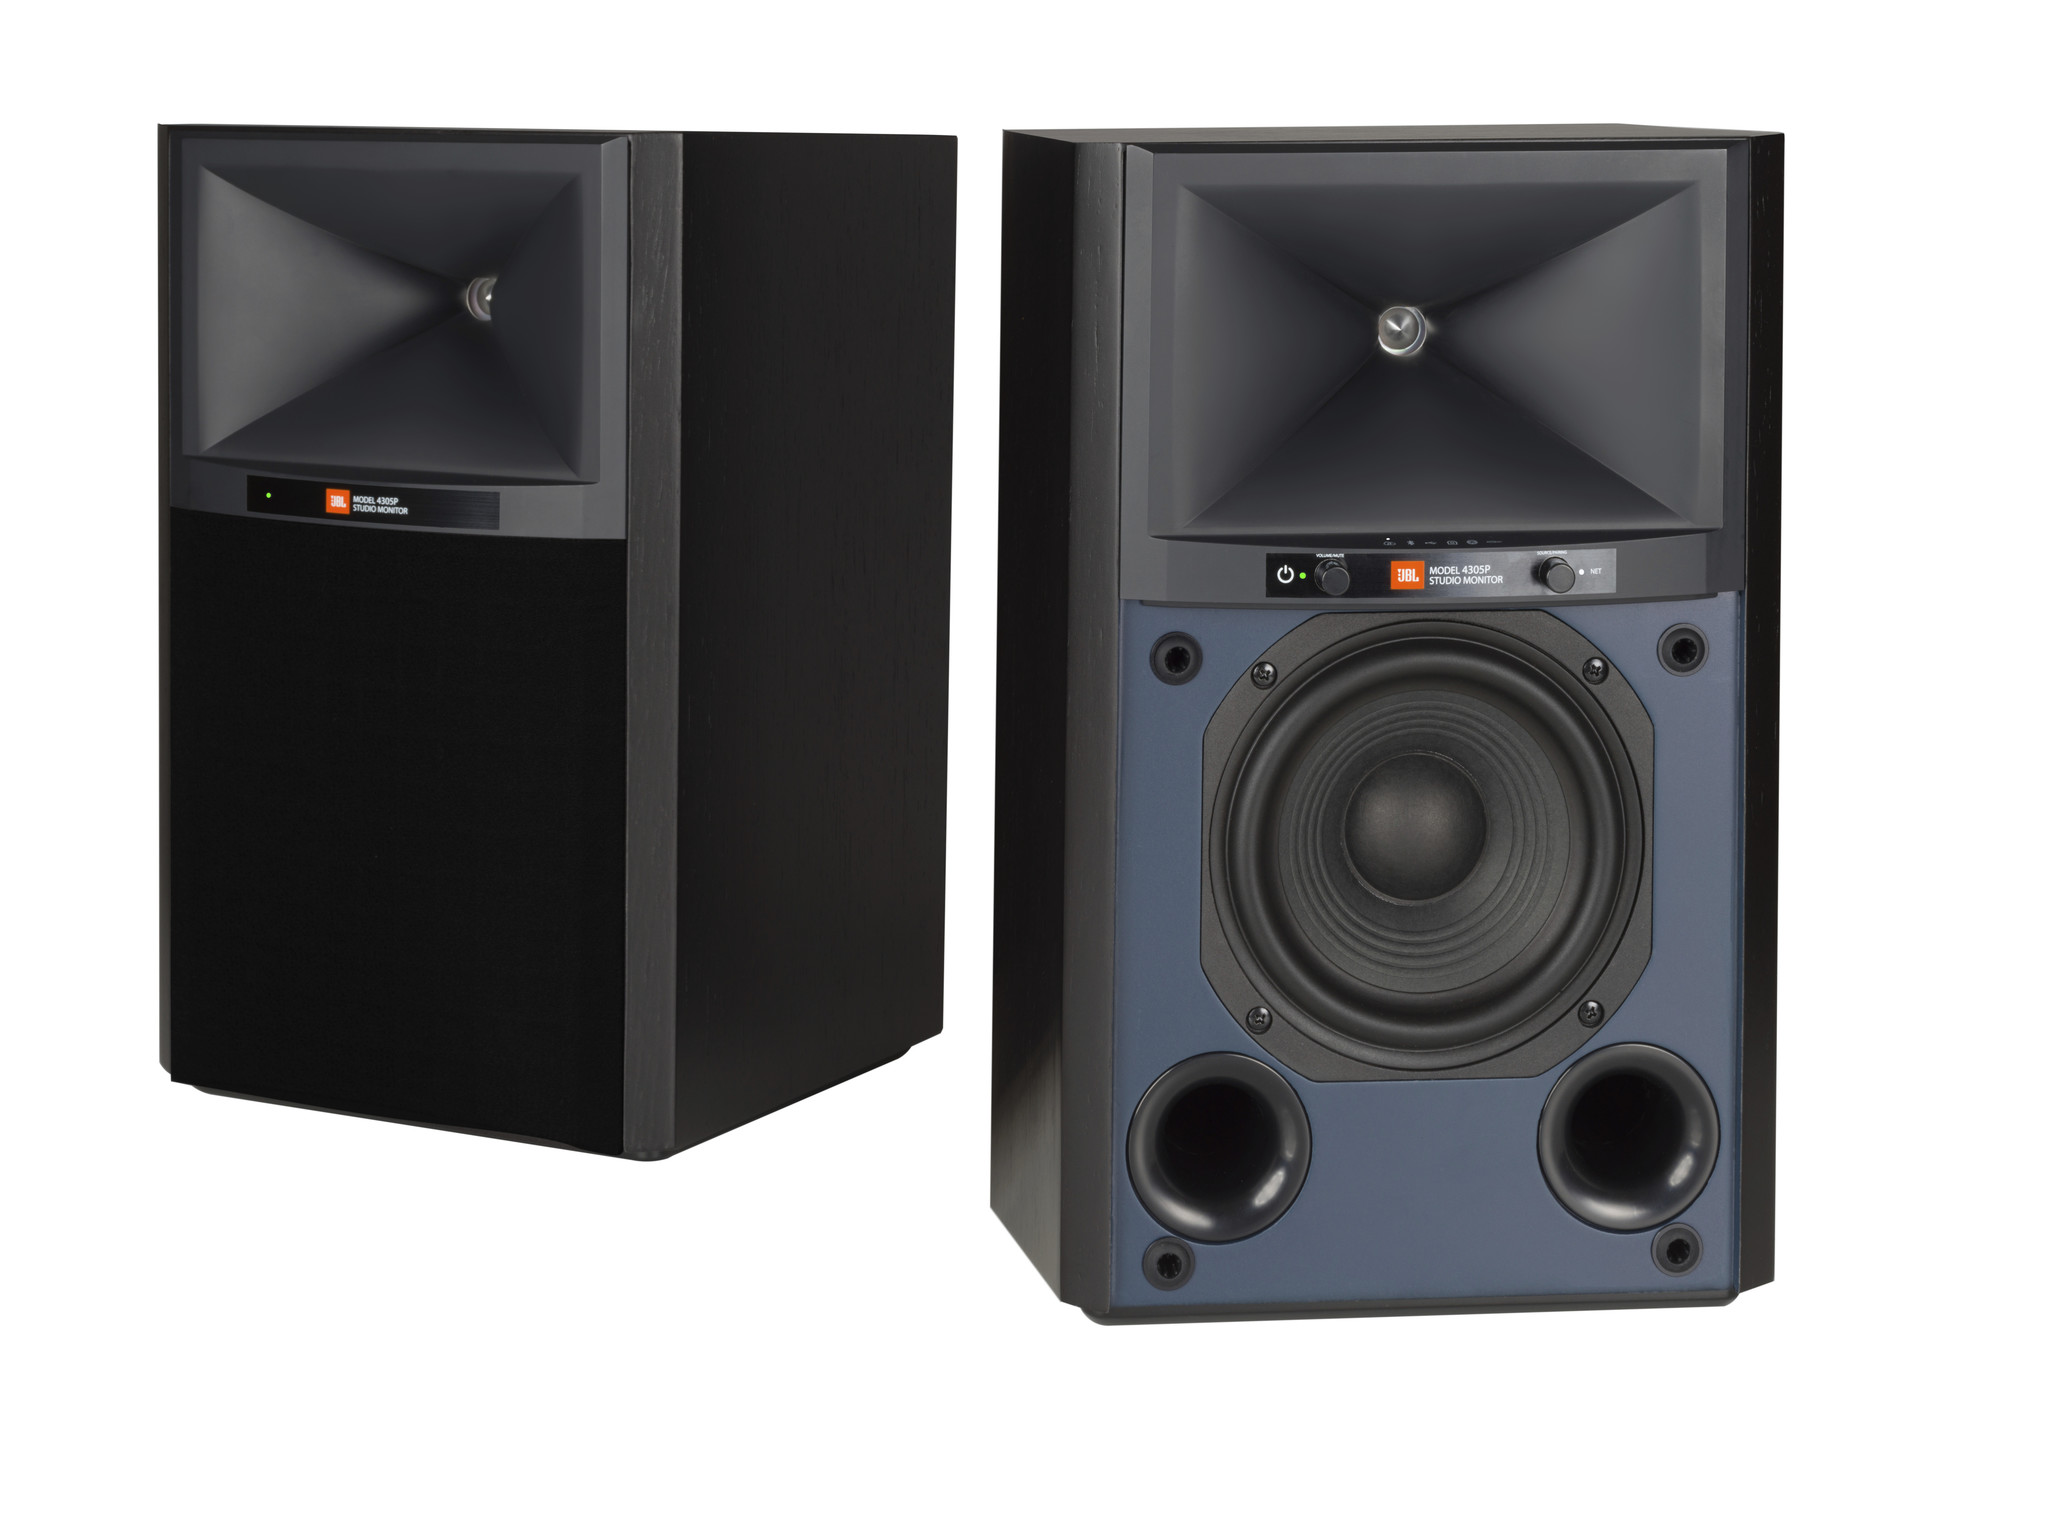 JBL 4305P actieve speakers - Zwart (per paar) - Audio